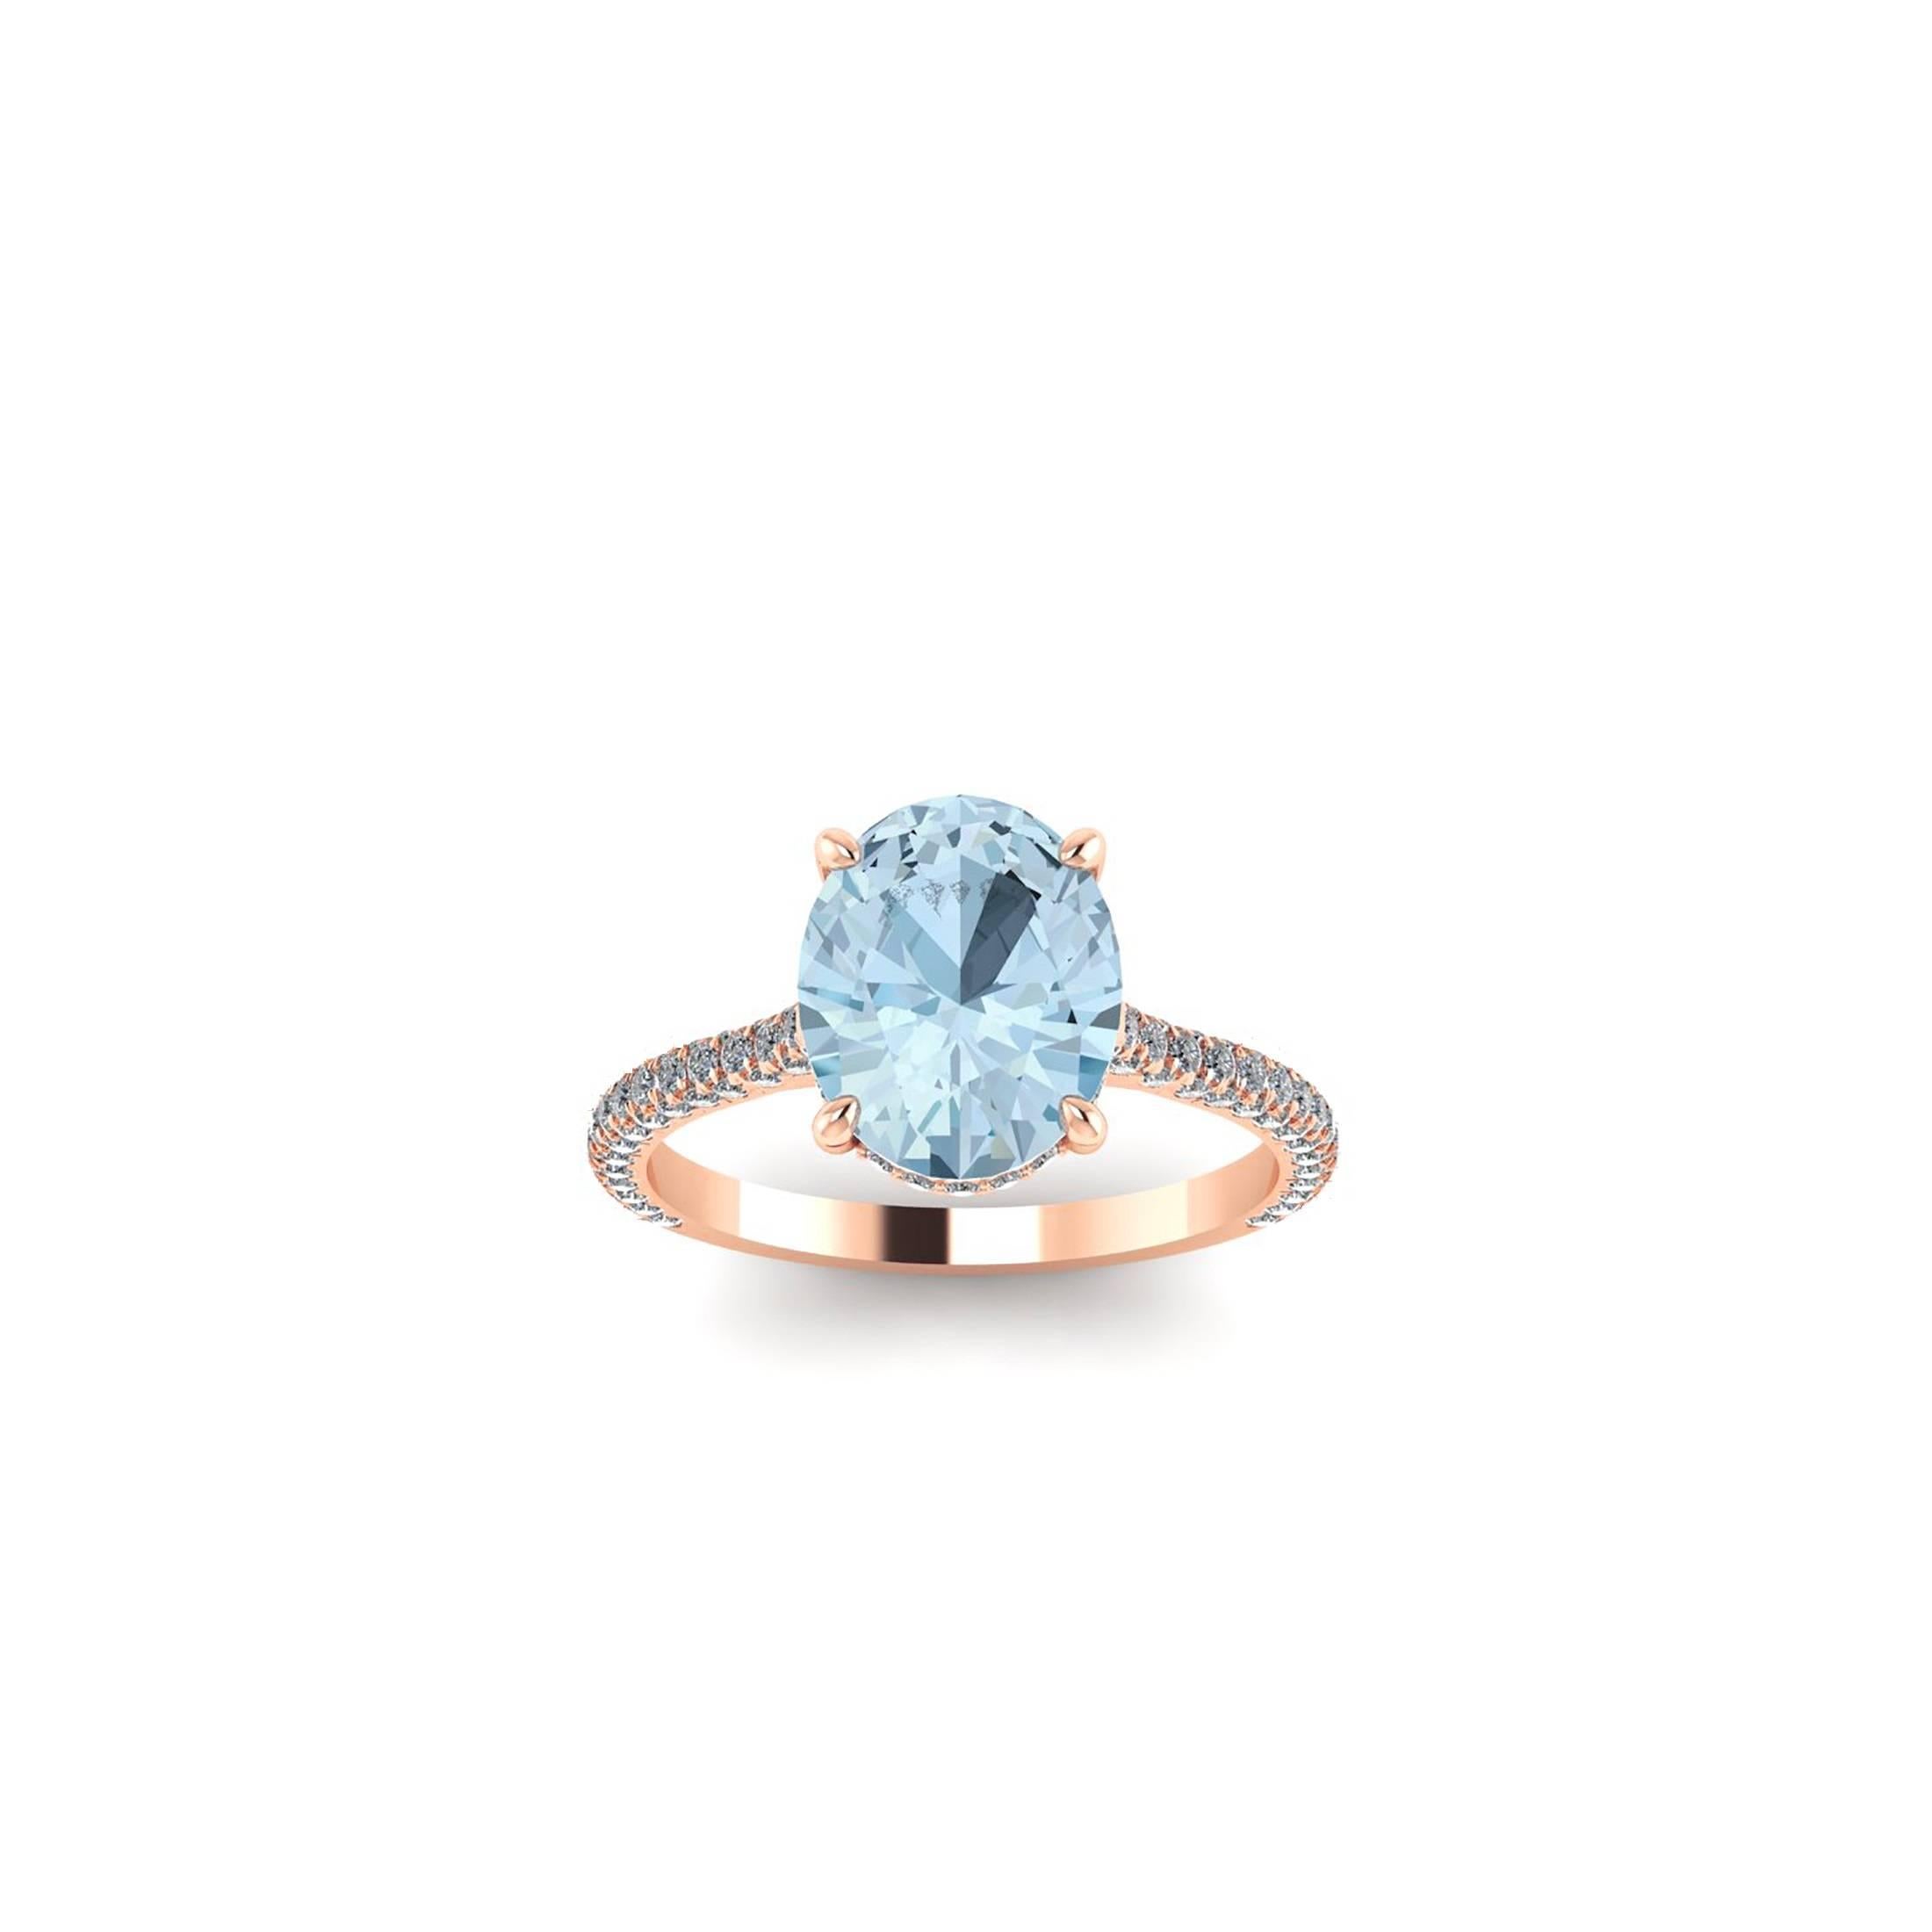 2.22 Karat blauer Aquamarin, handgeschliffen, gefasst in einem Ring aus 18 Karat Roségold, 
geschmückt mit weißen, runden, handgefassten Diamanten (ca. 0,50 Karat), die für ein Maximum an Glanz und Funkeln sorgen.

Dieser Ring hat die Größe 6  3/4